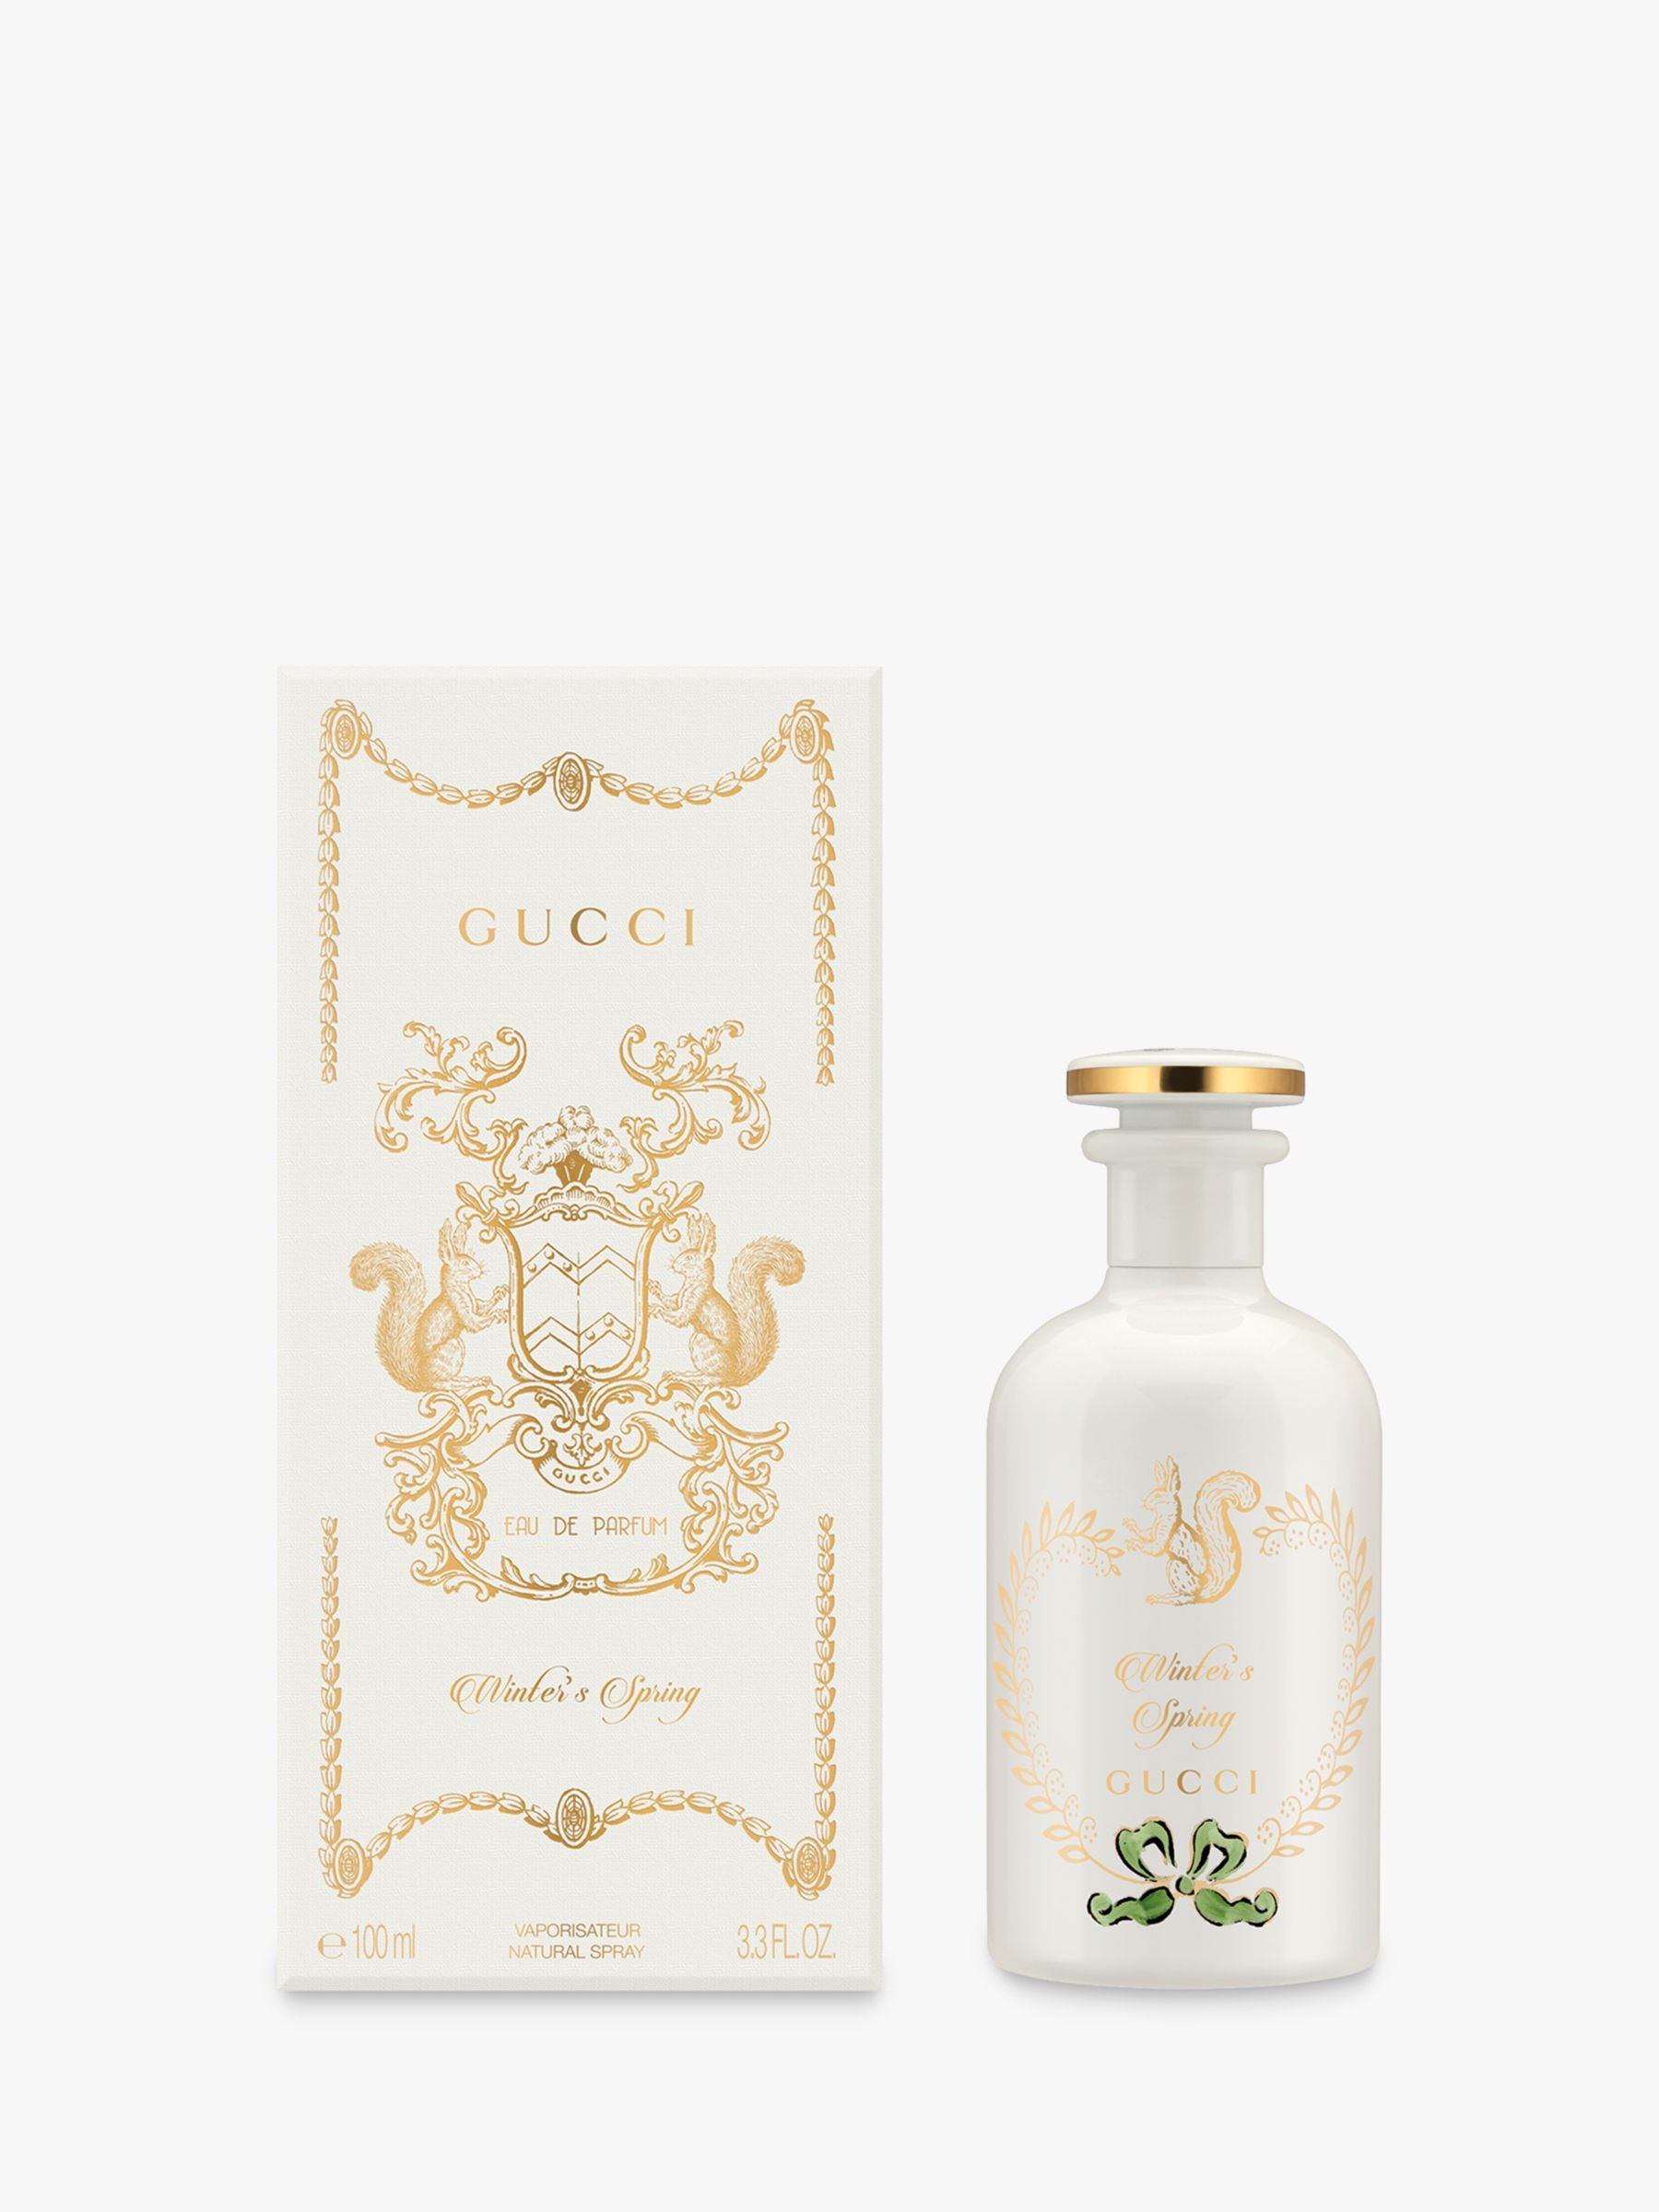 Gucci The Alchemist's Garden Winter's Spring Eau de Parfum, 100ml